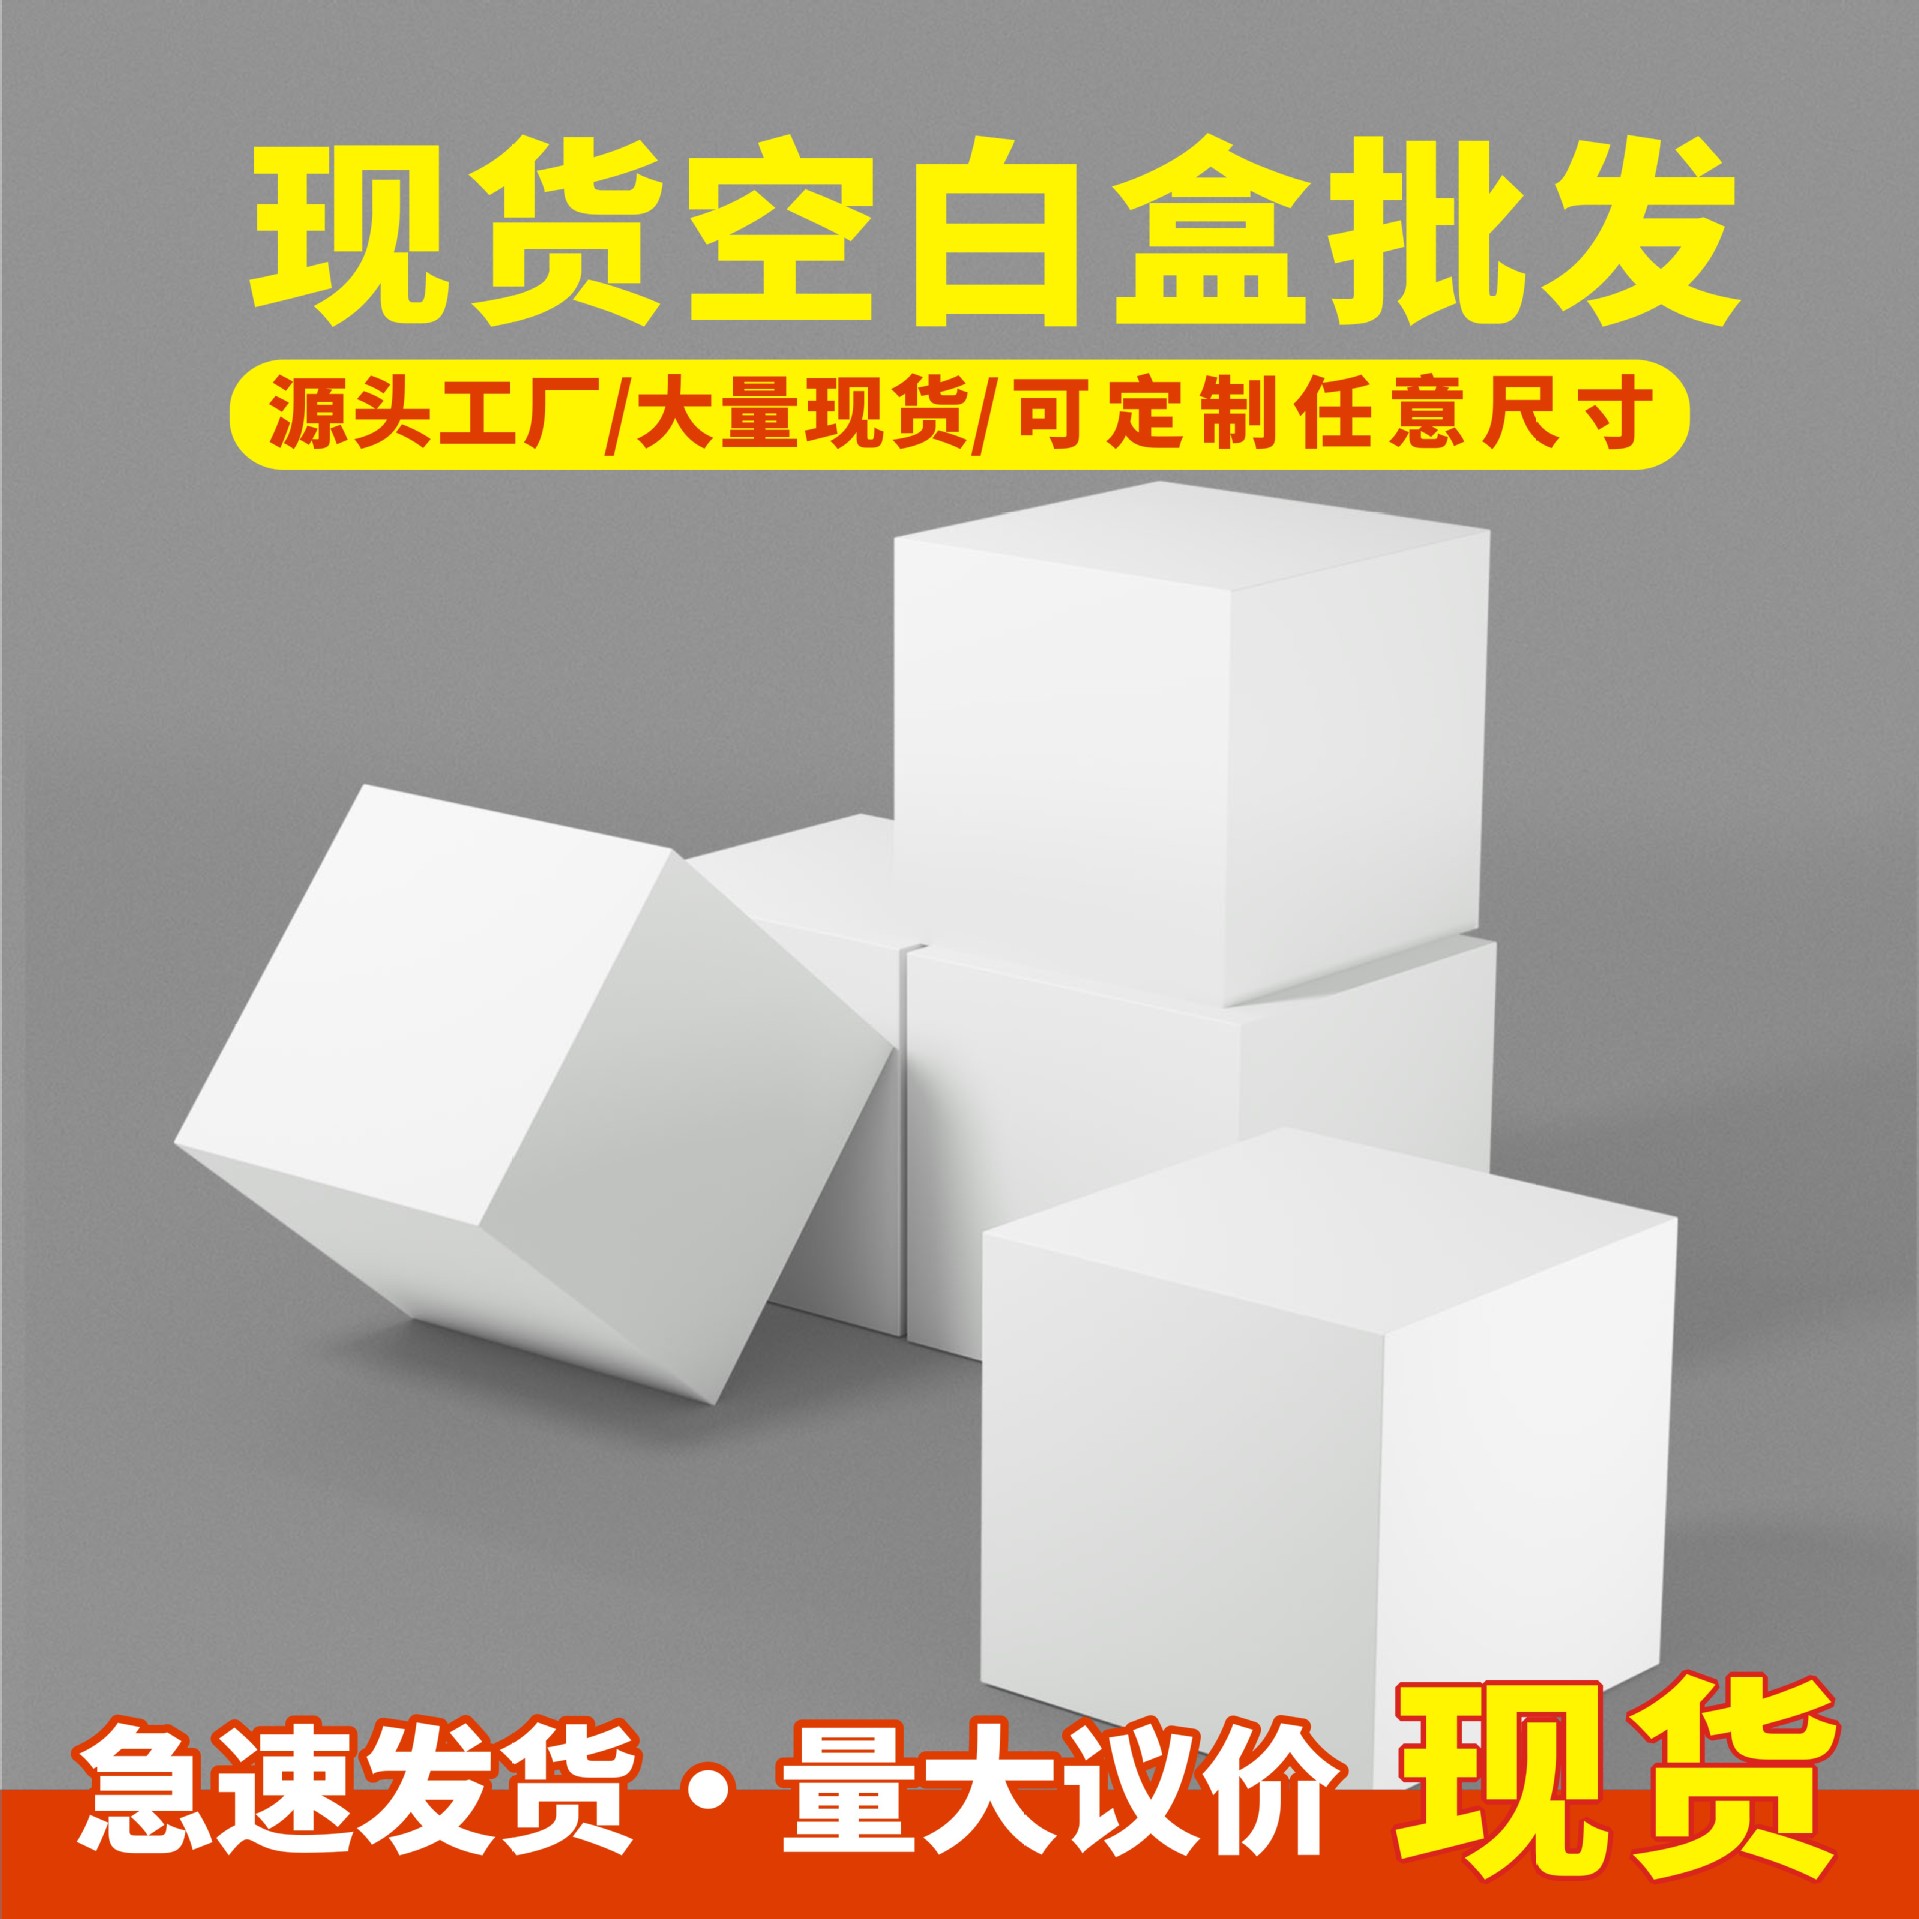 厂家现货批发正方形空白双插折叠盒通用中性白色小纸盒400g白卡纸